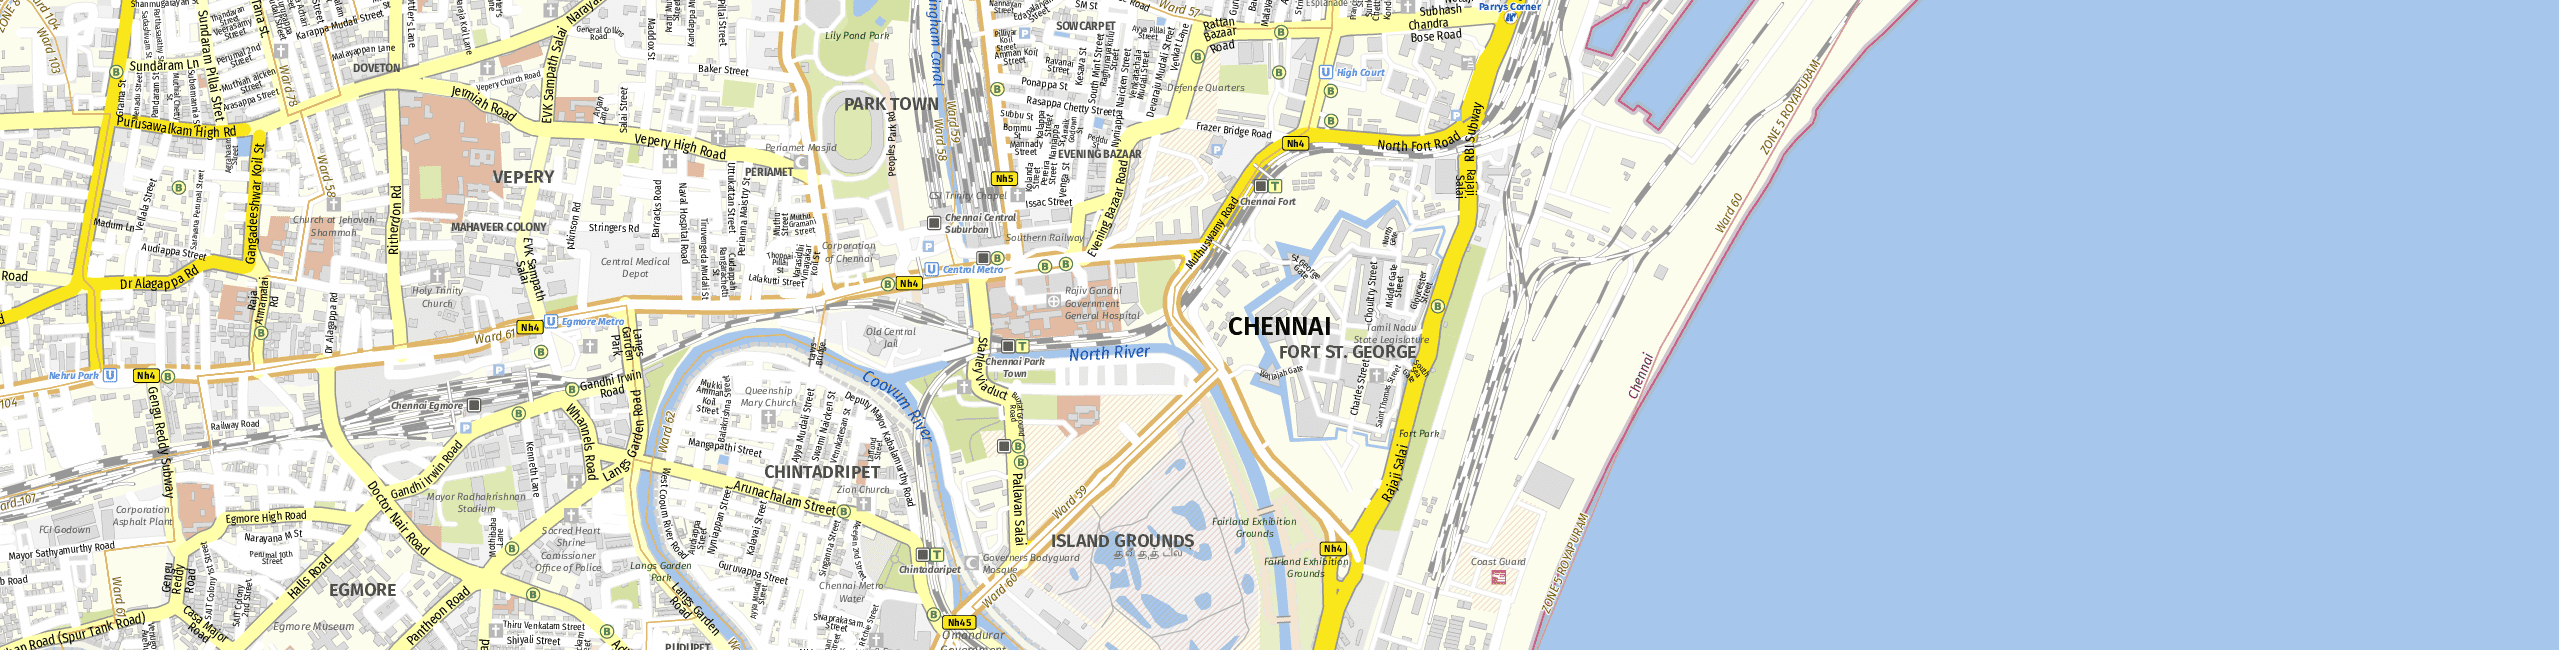 Stadtplan Chennai zum Downloaden.